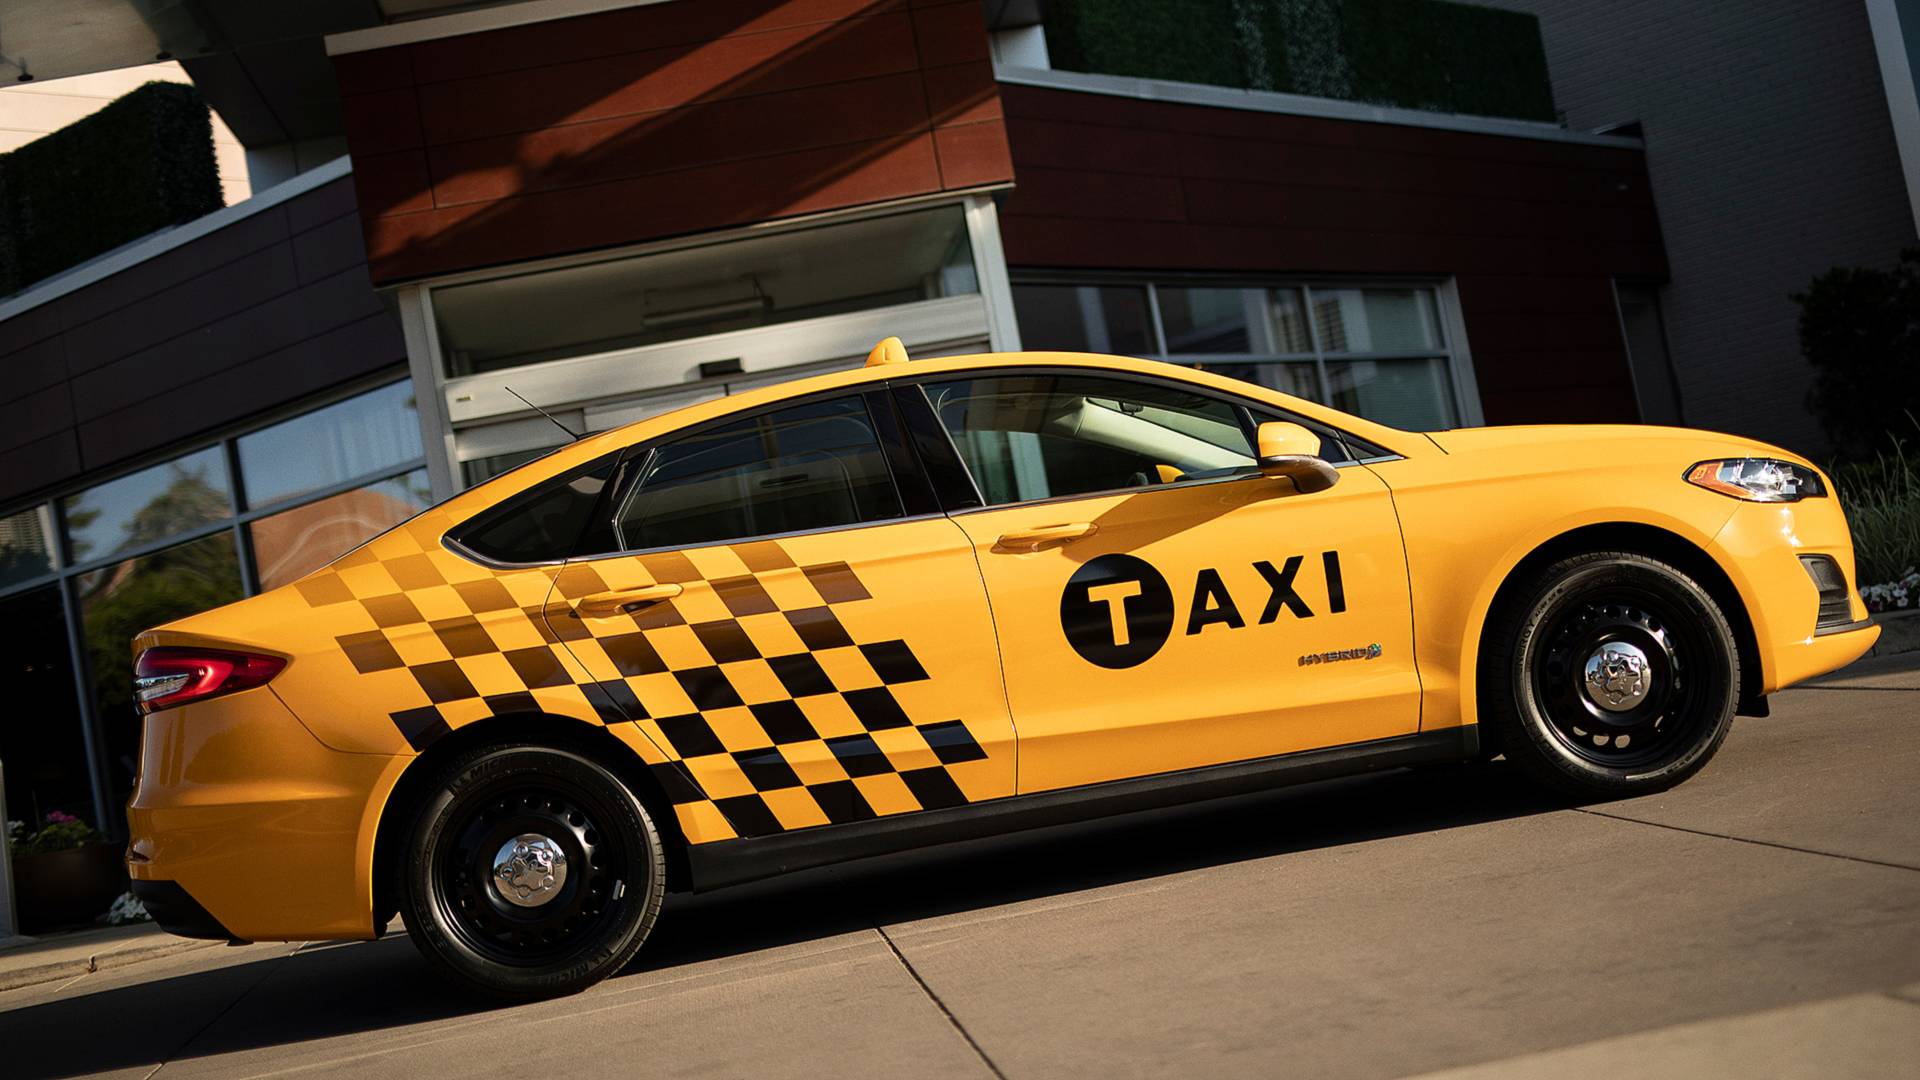 Сервис такси в городе Королев. Его тарифы и его главные плюсы